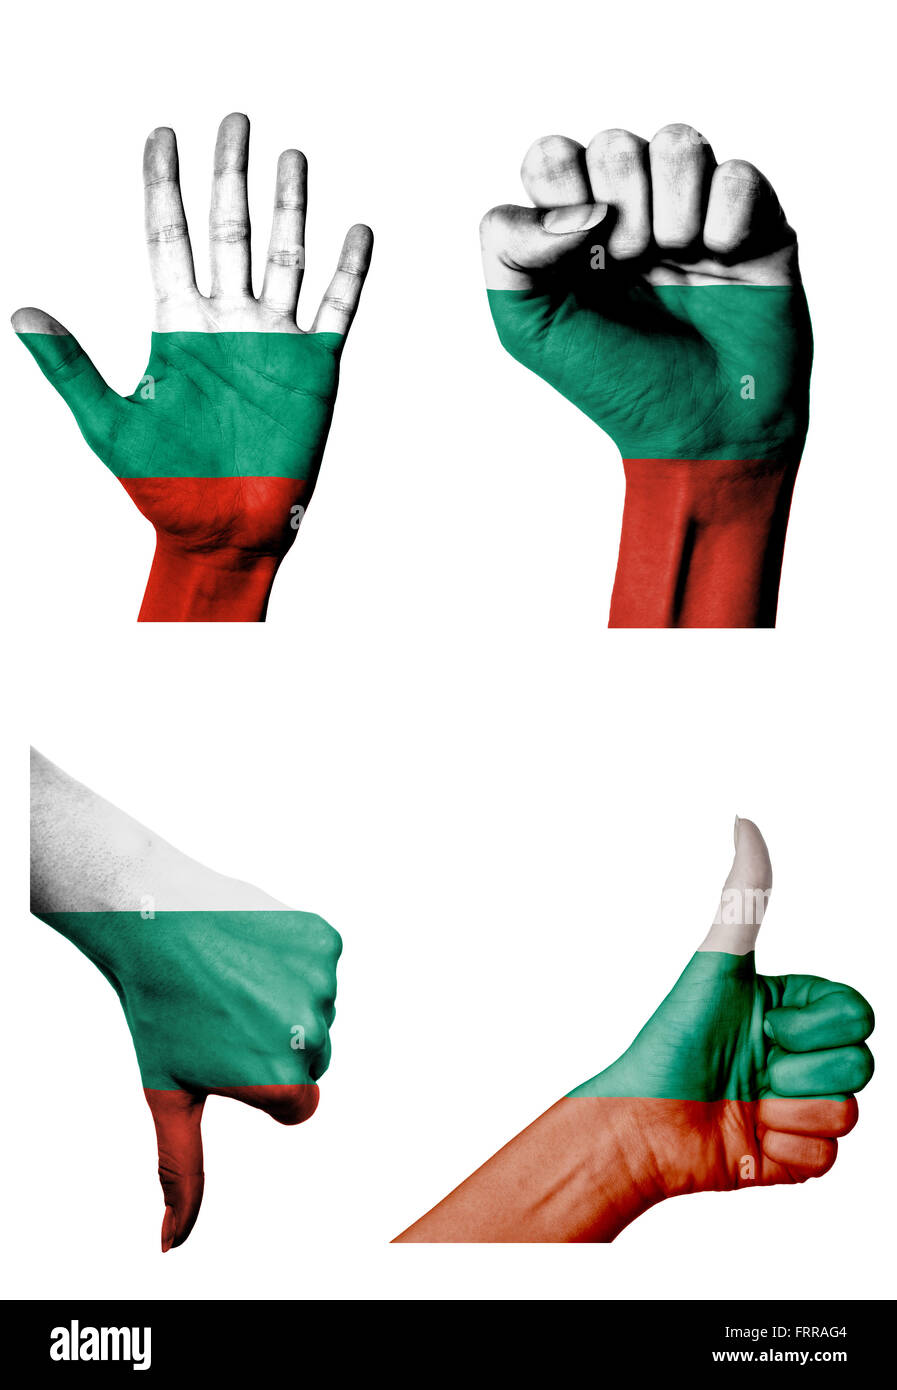 Les mains avec plusieurs gestes (poing fermé, paume ouverte, les pouces vers le haut et vers le bas) avec la Bulgarie flag painted isolated on white Banque D'Images